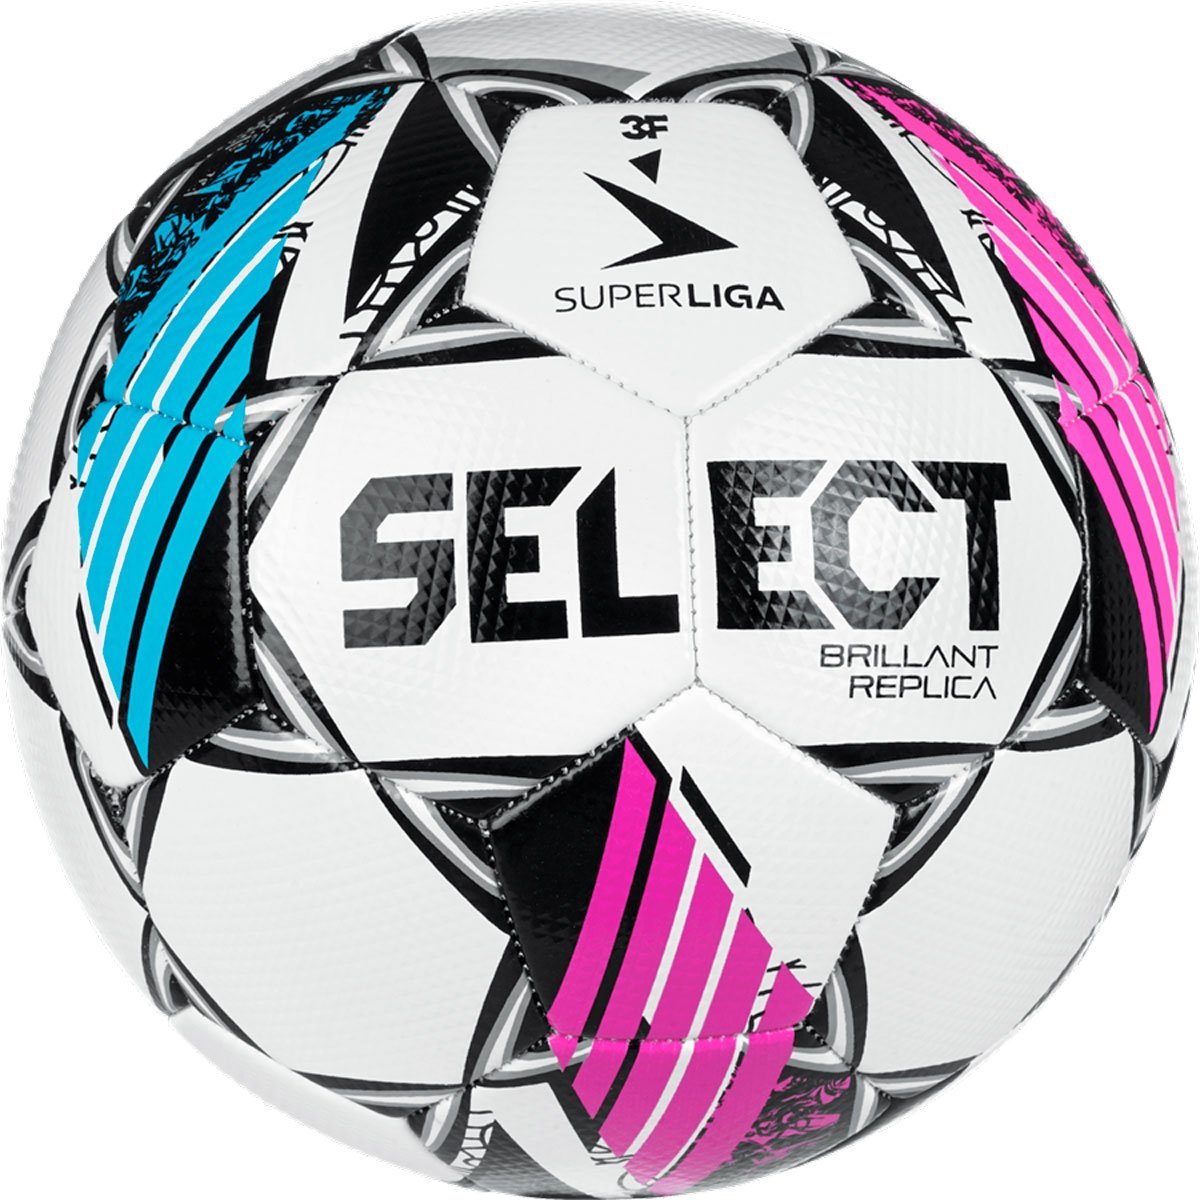 Select Brillant Replica 3F Superliga Fodbold thumbnail